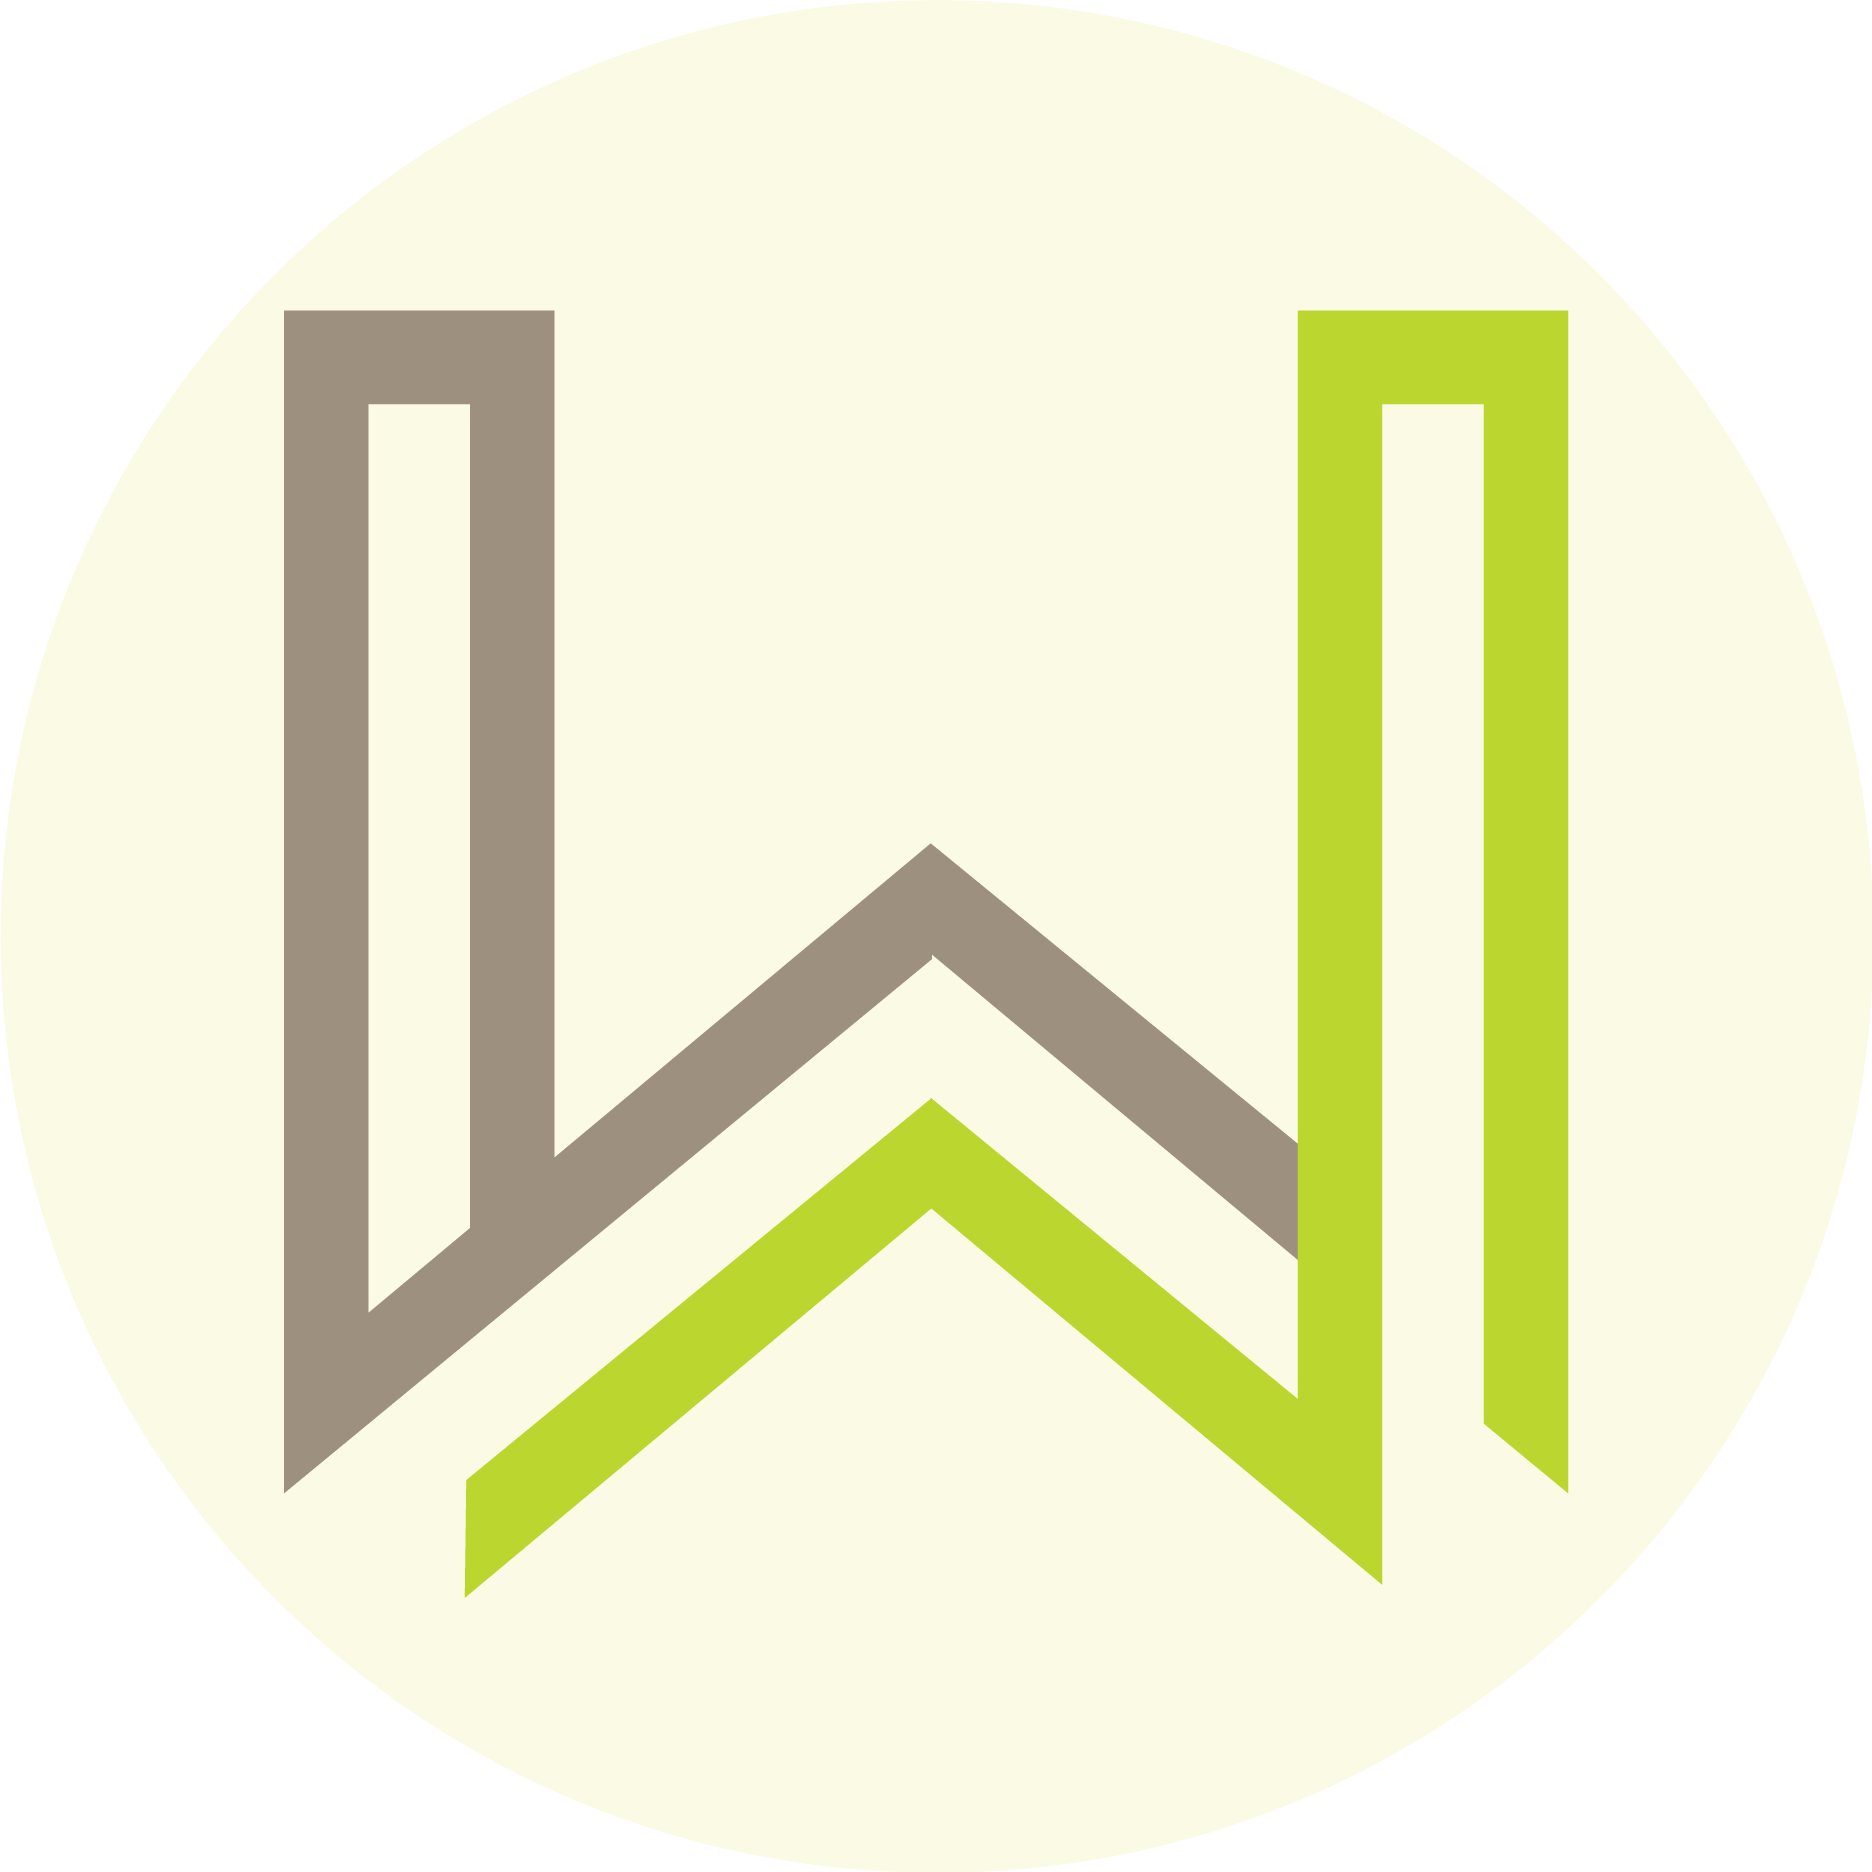 Wallis Logo